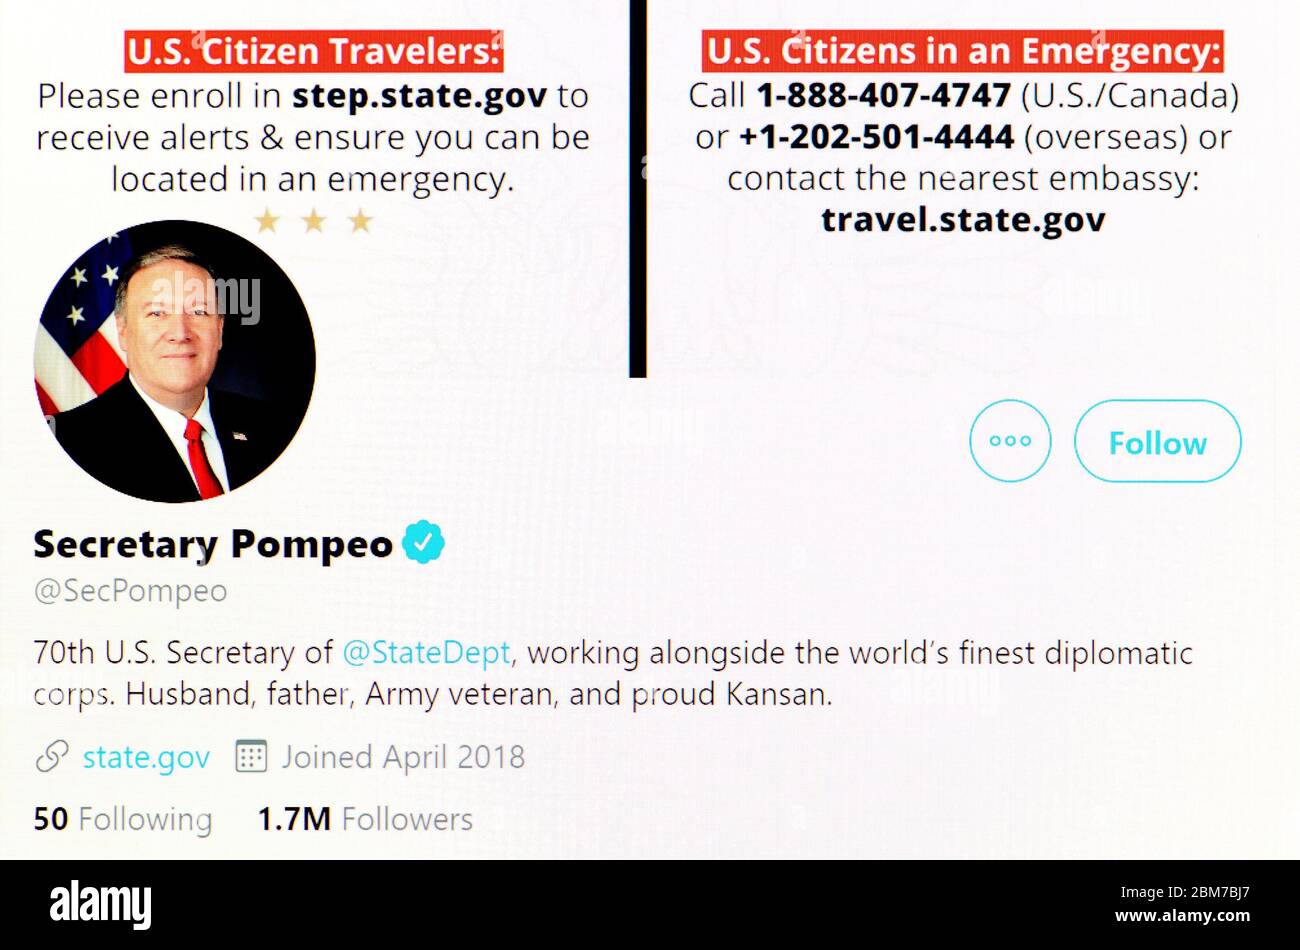 Twitter-Seite (Mai 2020) Mike Pompeo - Staatssekretär der Vereinigten Staaten Stockfoto